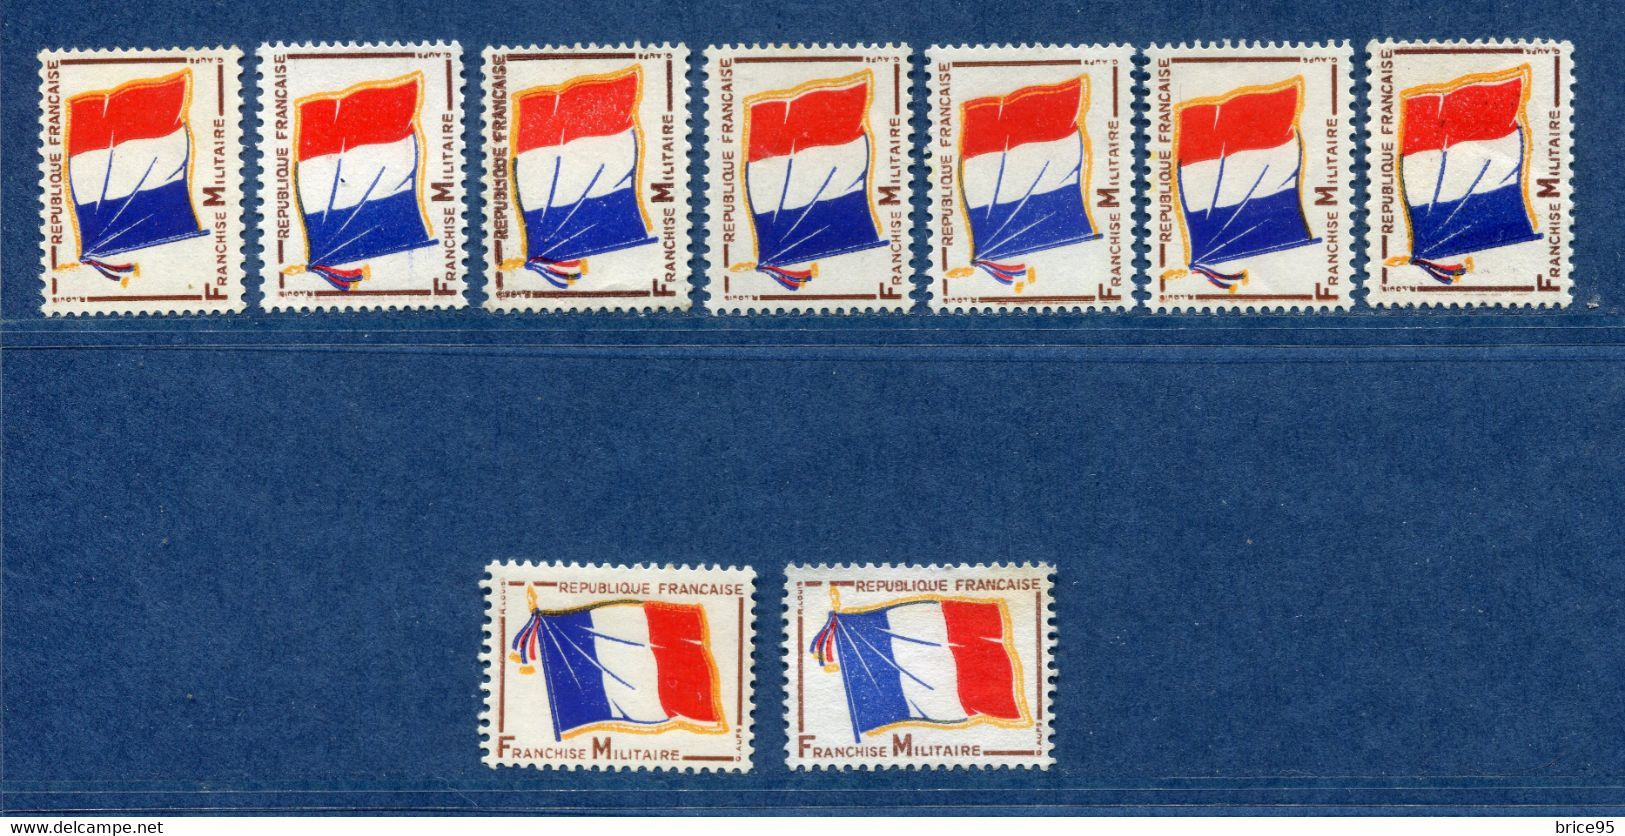 ⭐ France - Variété - YT FM N° 13 - Franchise Militaire - Couleurs - Pétouilles - Neuf Sans Charnière - 1964 ⭐ - Unused Stamps